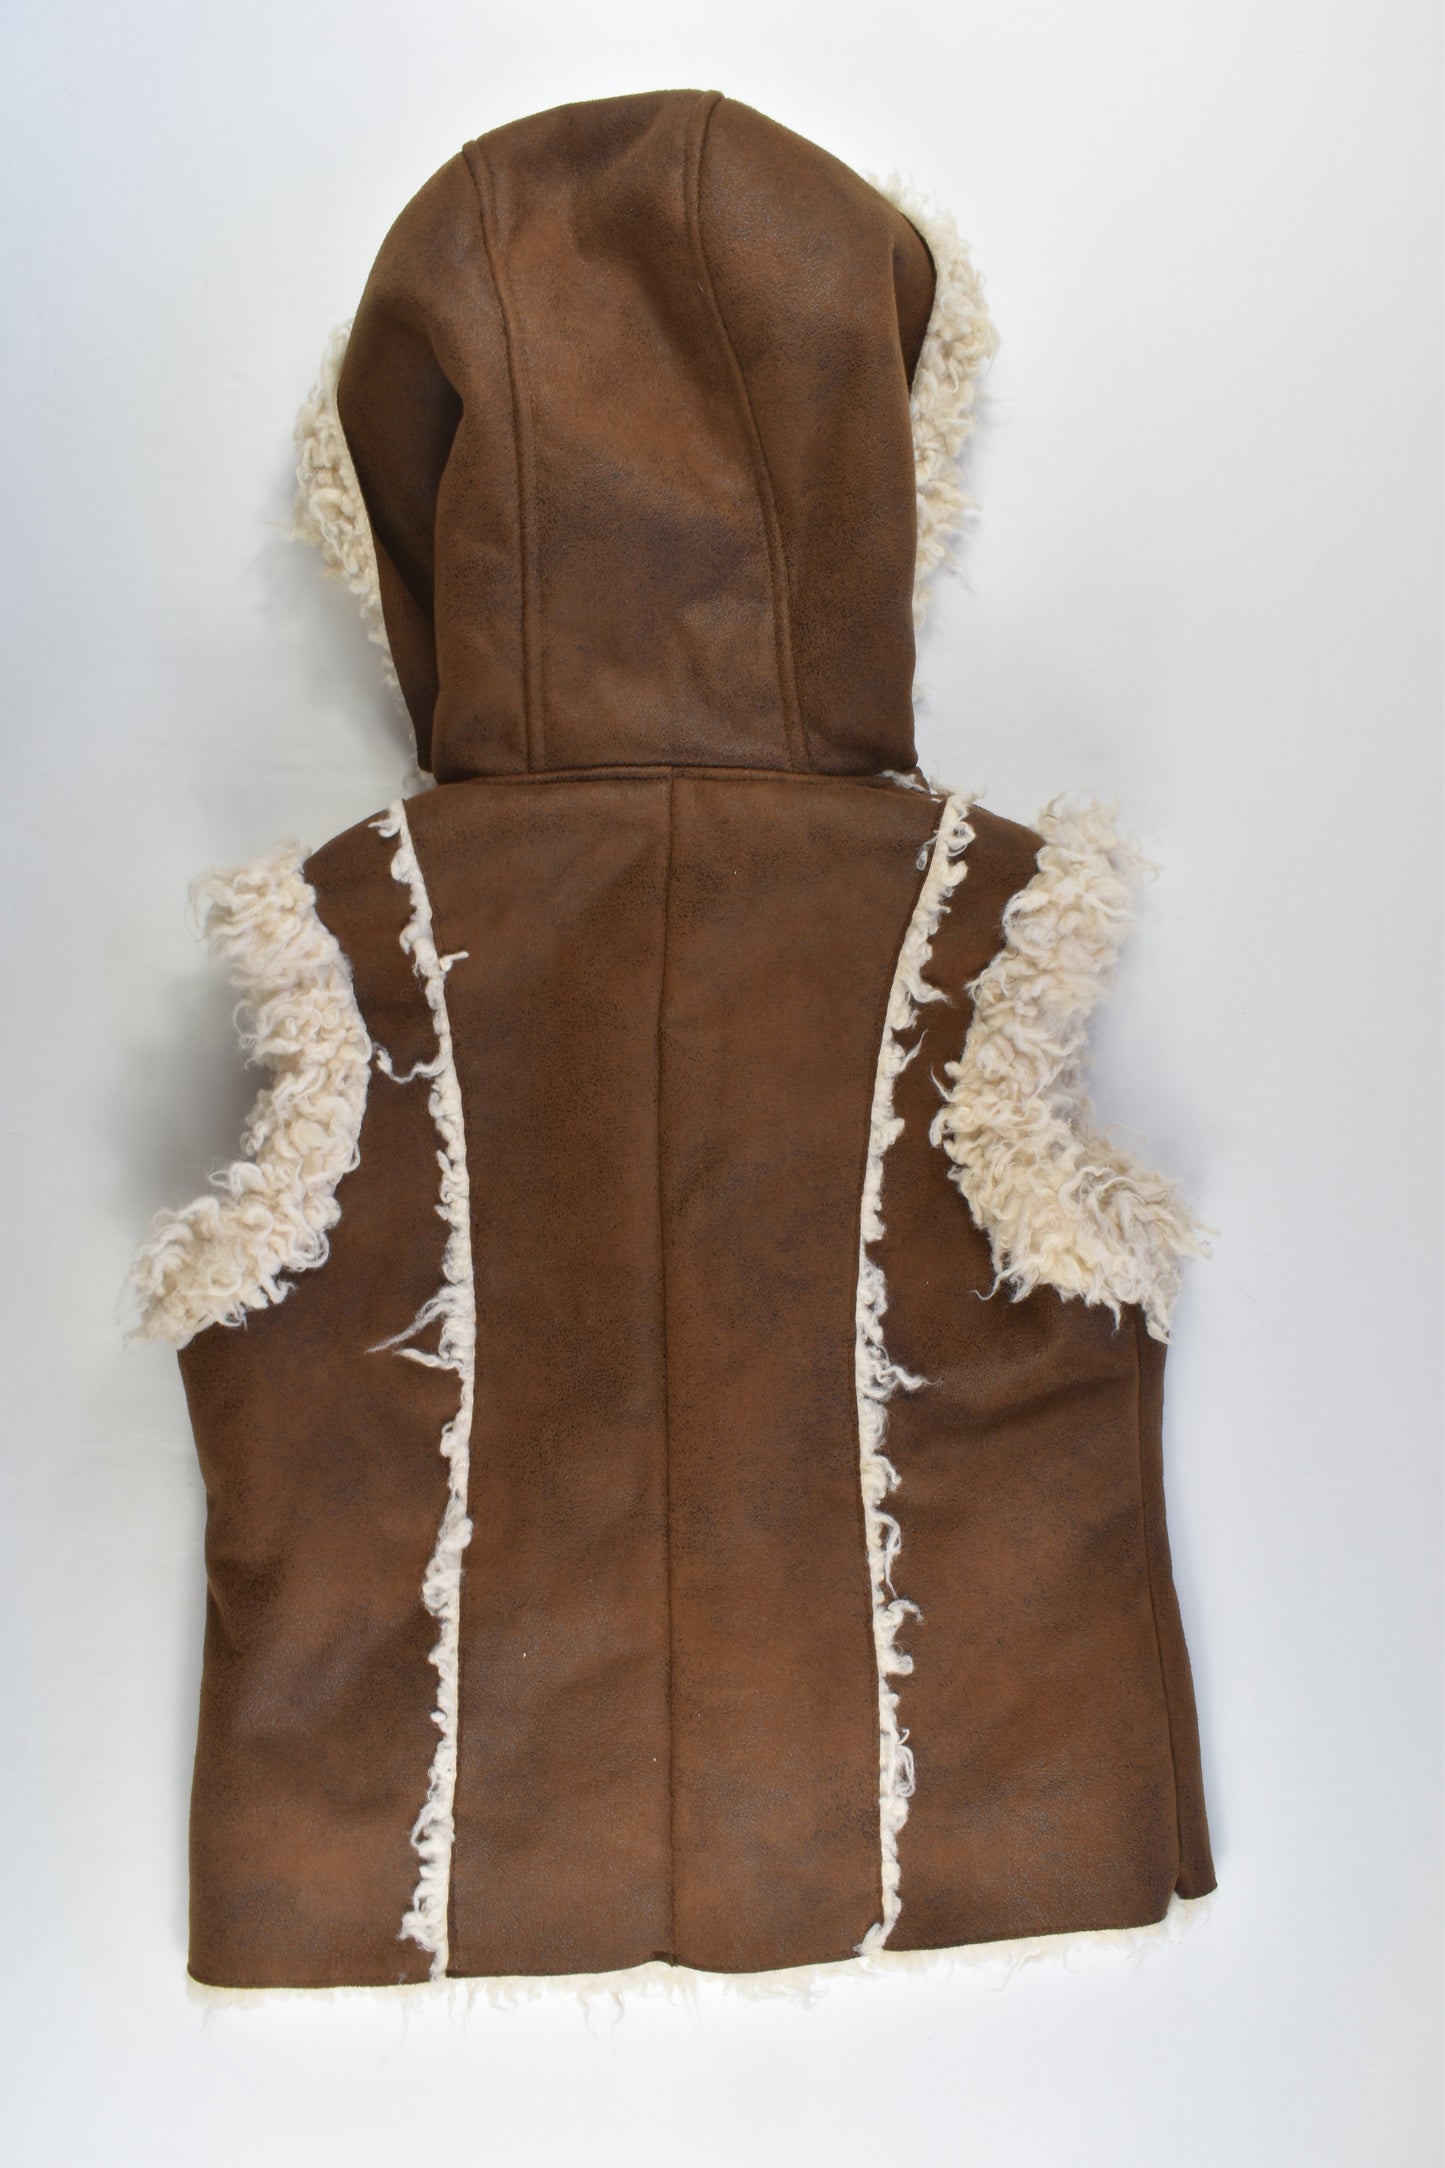 GJK-Mamba Size 11/12 Sherpa Leather Look Sleeveless Jacket